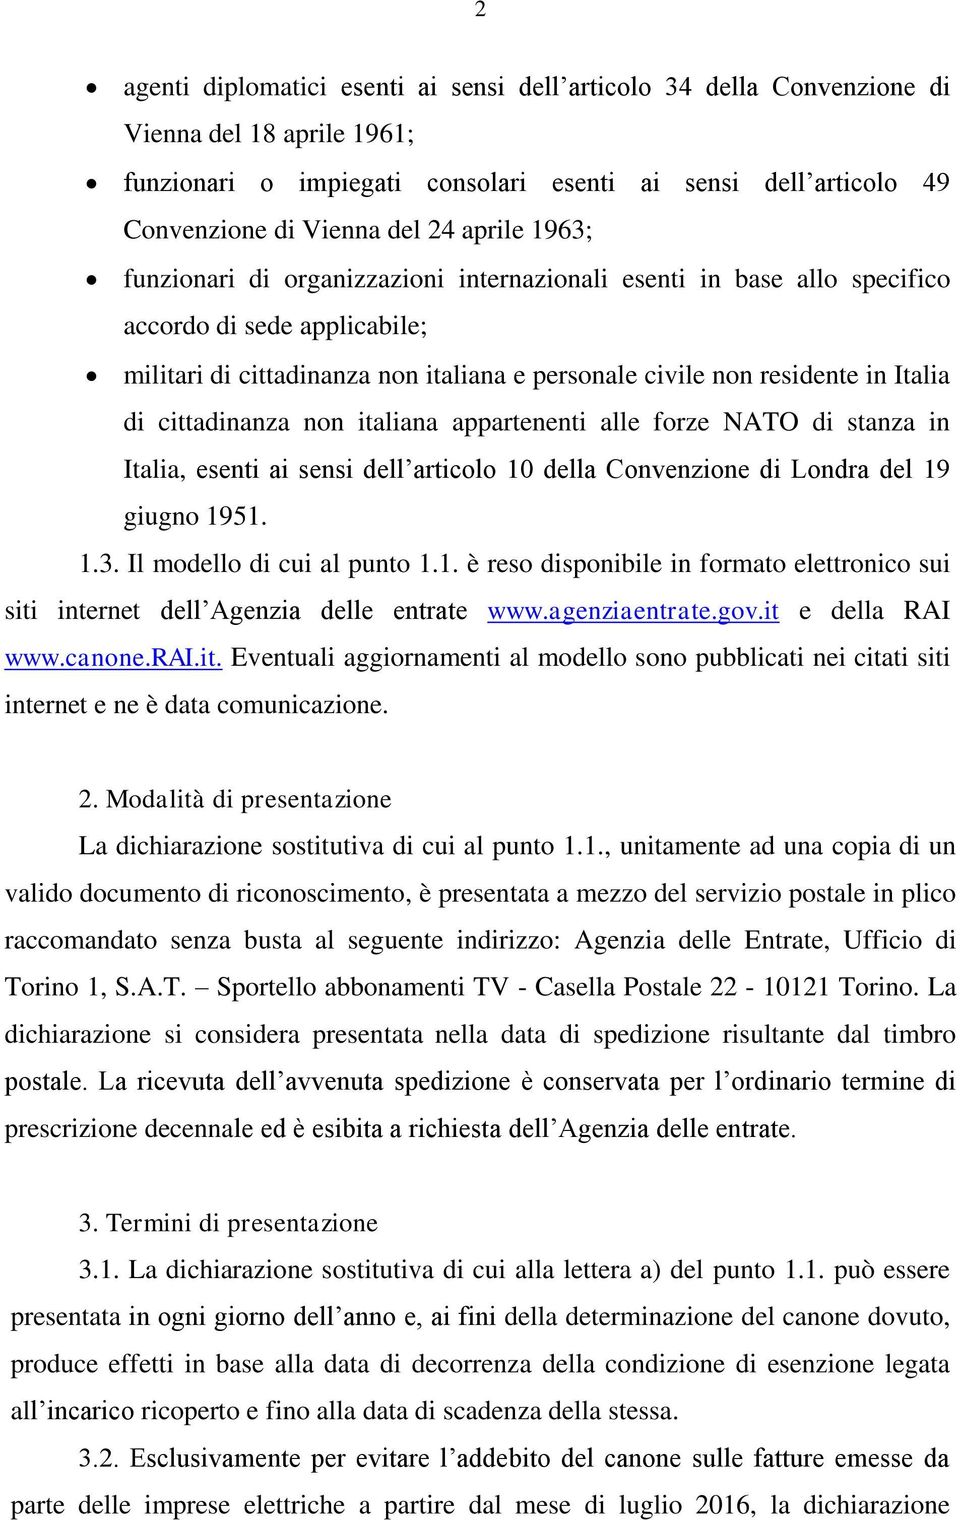 cittadinanza non italiana appartenenti alle forze NATO di stanza in Italia, esenti ai sensi dell articolo 10 della Convenzione di Londra del 19 giugno 1951. 1.3. Il modello di cui al punto 1.1. è reso disponibile in formato elettronico sui siti internet dell Agenzia delle entrate www.